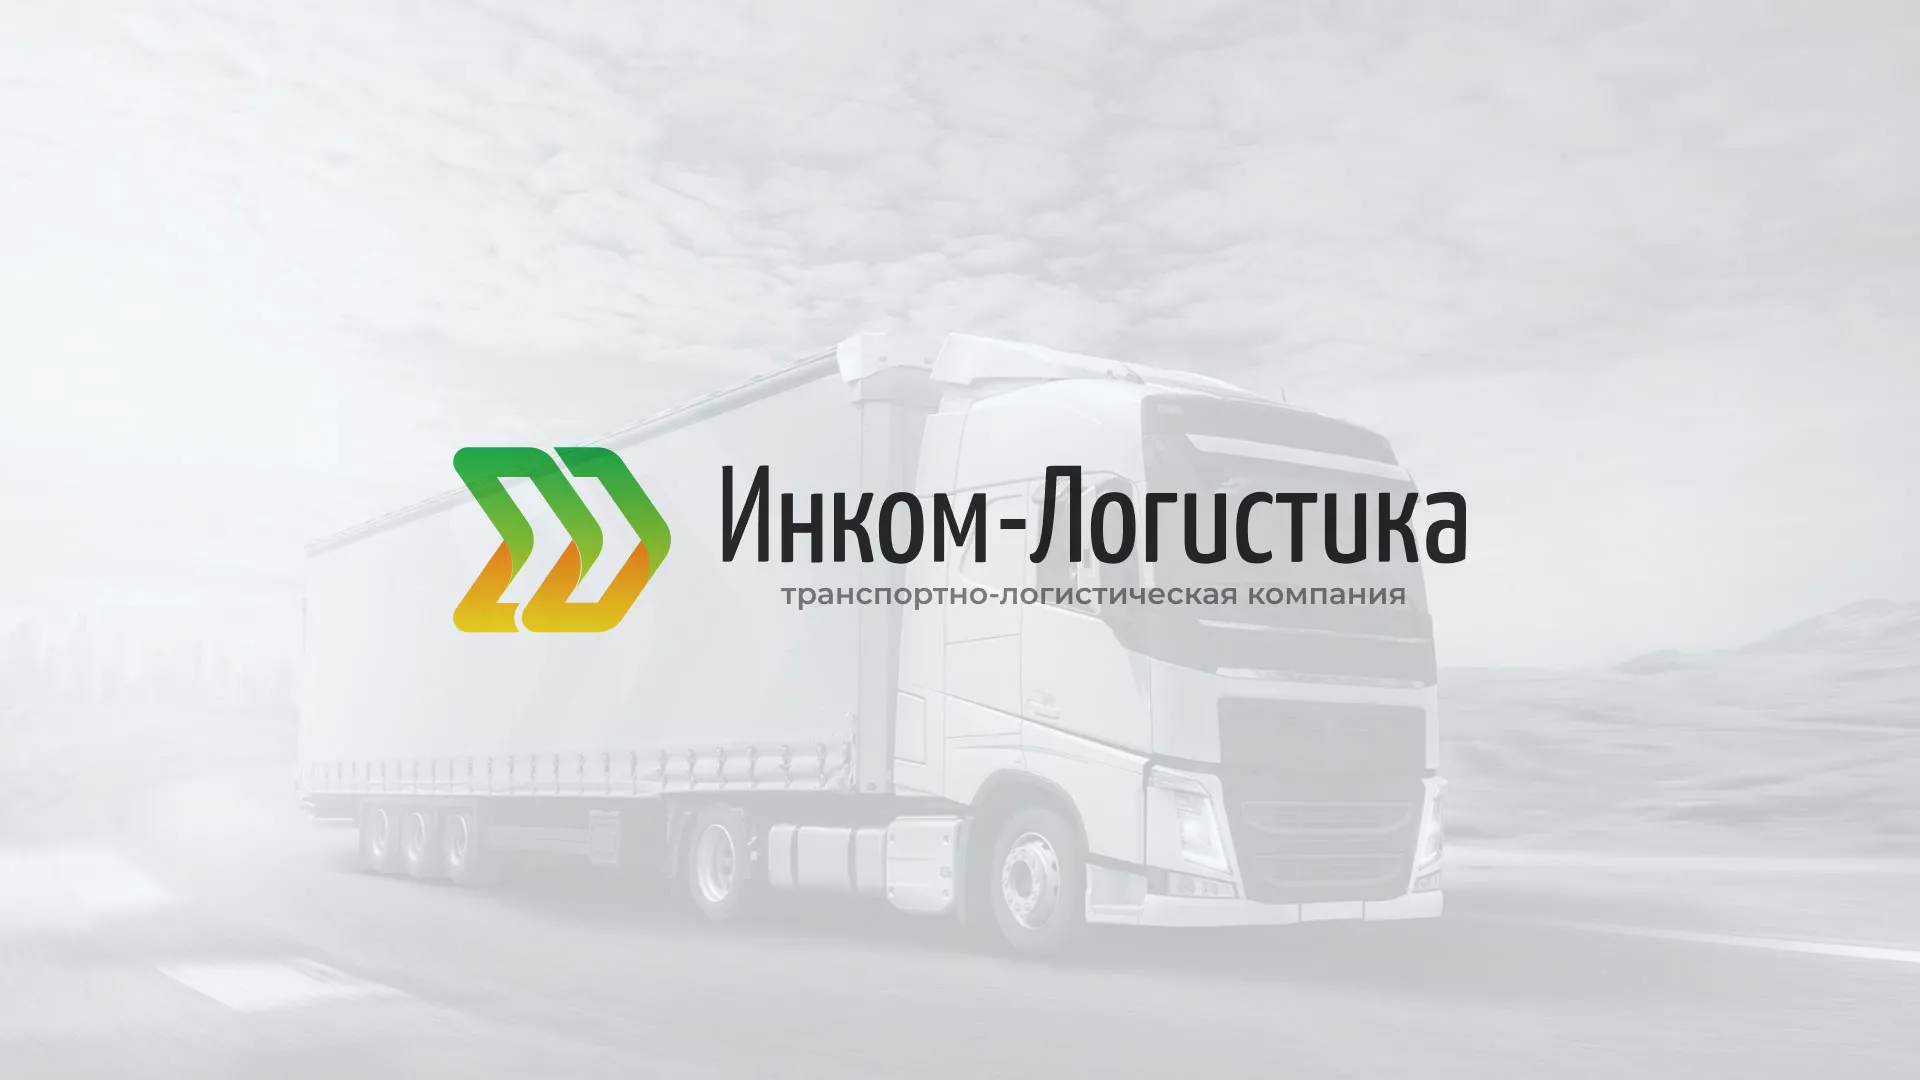 Разработка логотипа и сайта компании «Инком-Логистика» в Ульяновске